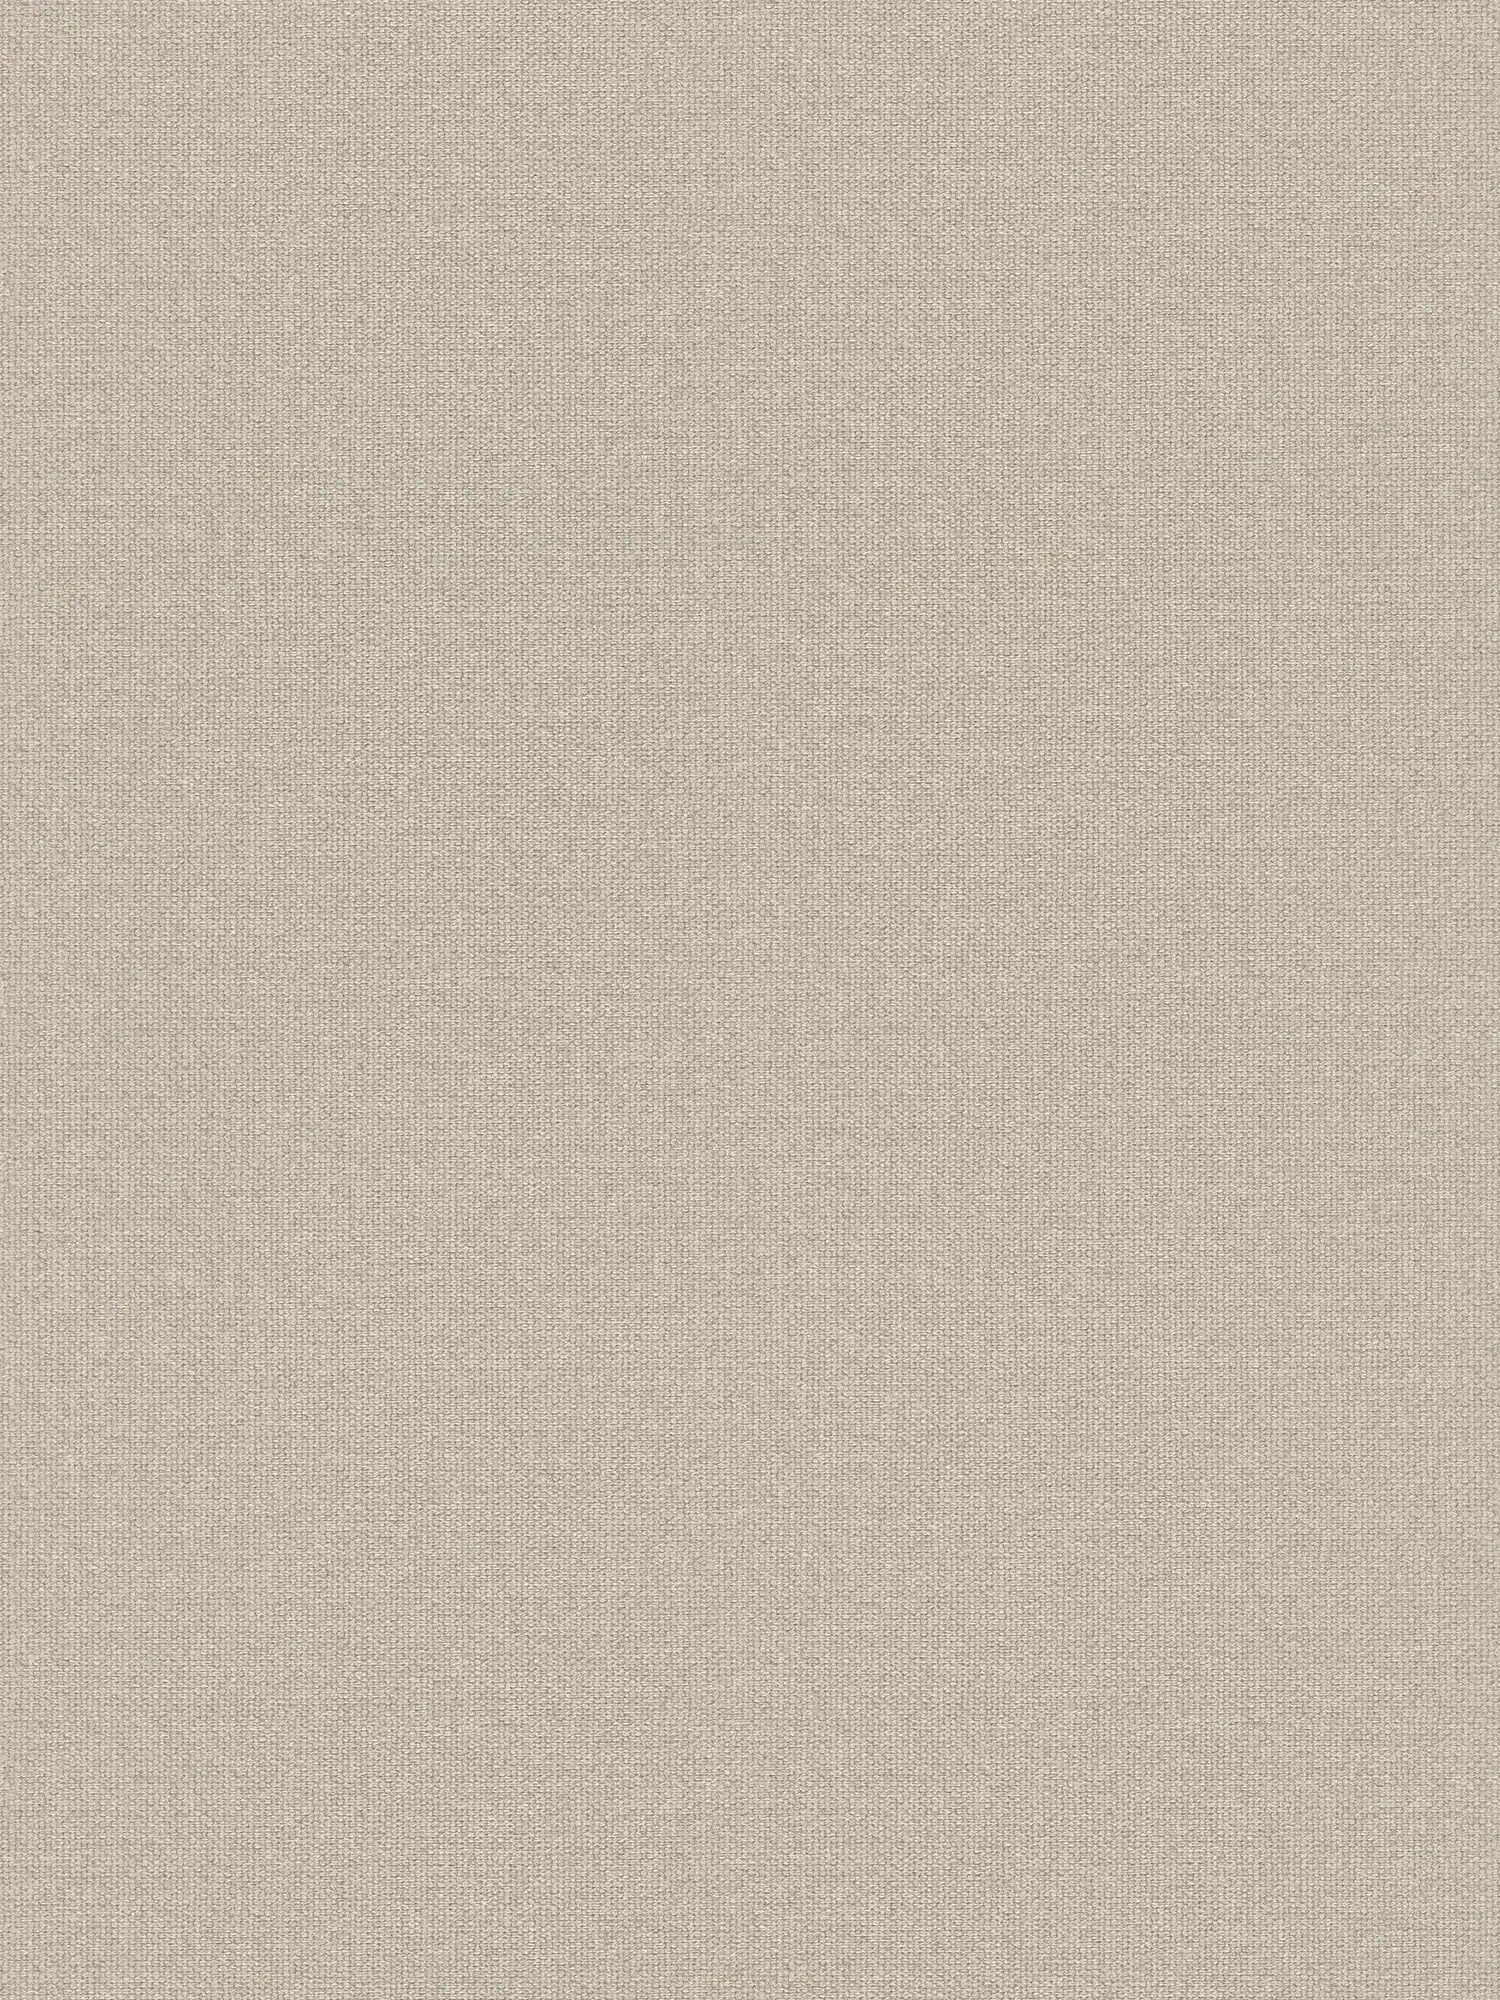 Papier peint à l'aspect lin avec surface structurée, uni - beige, gris
